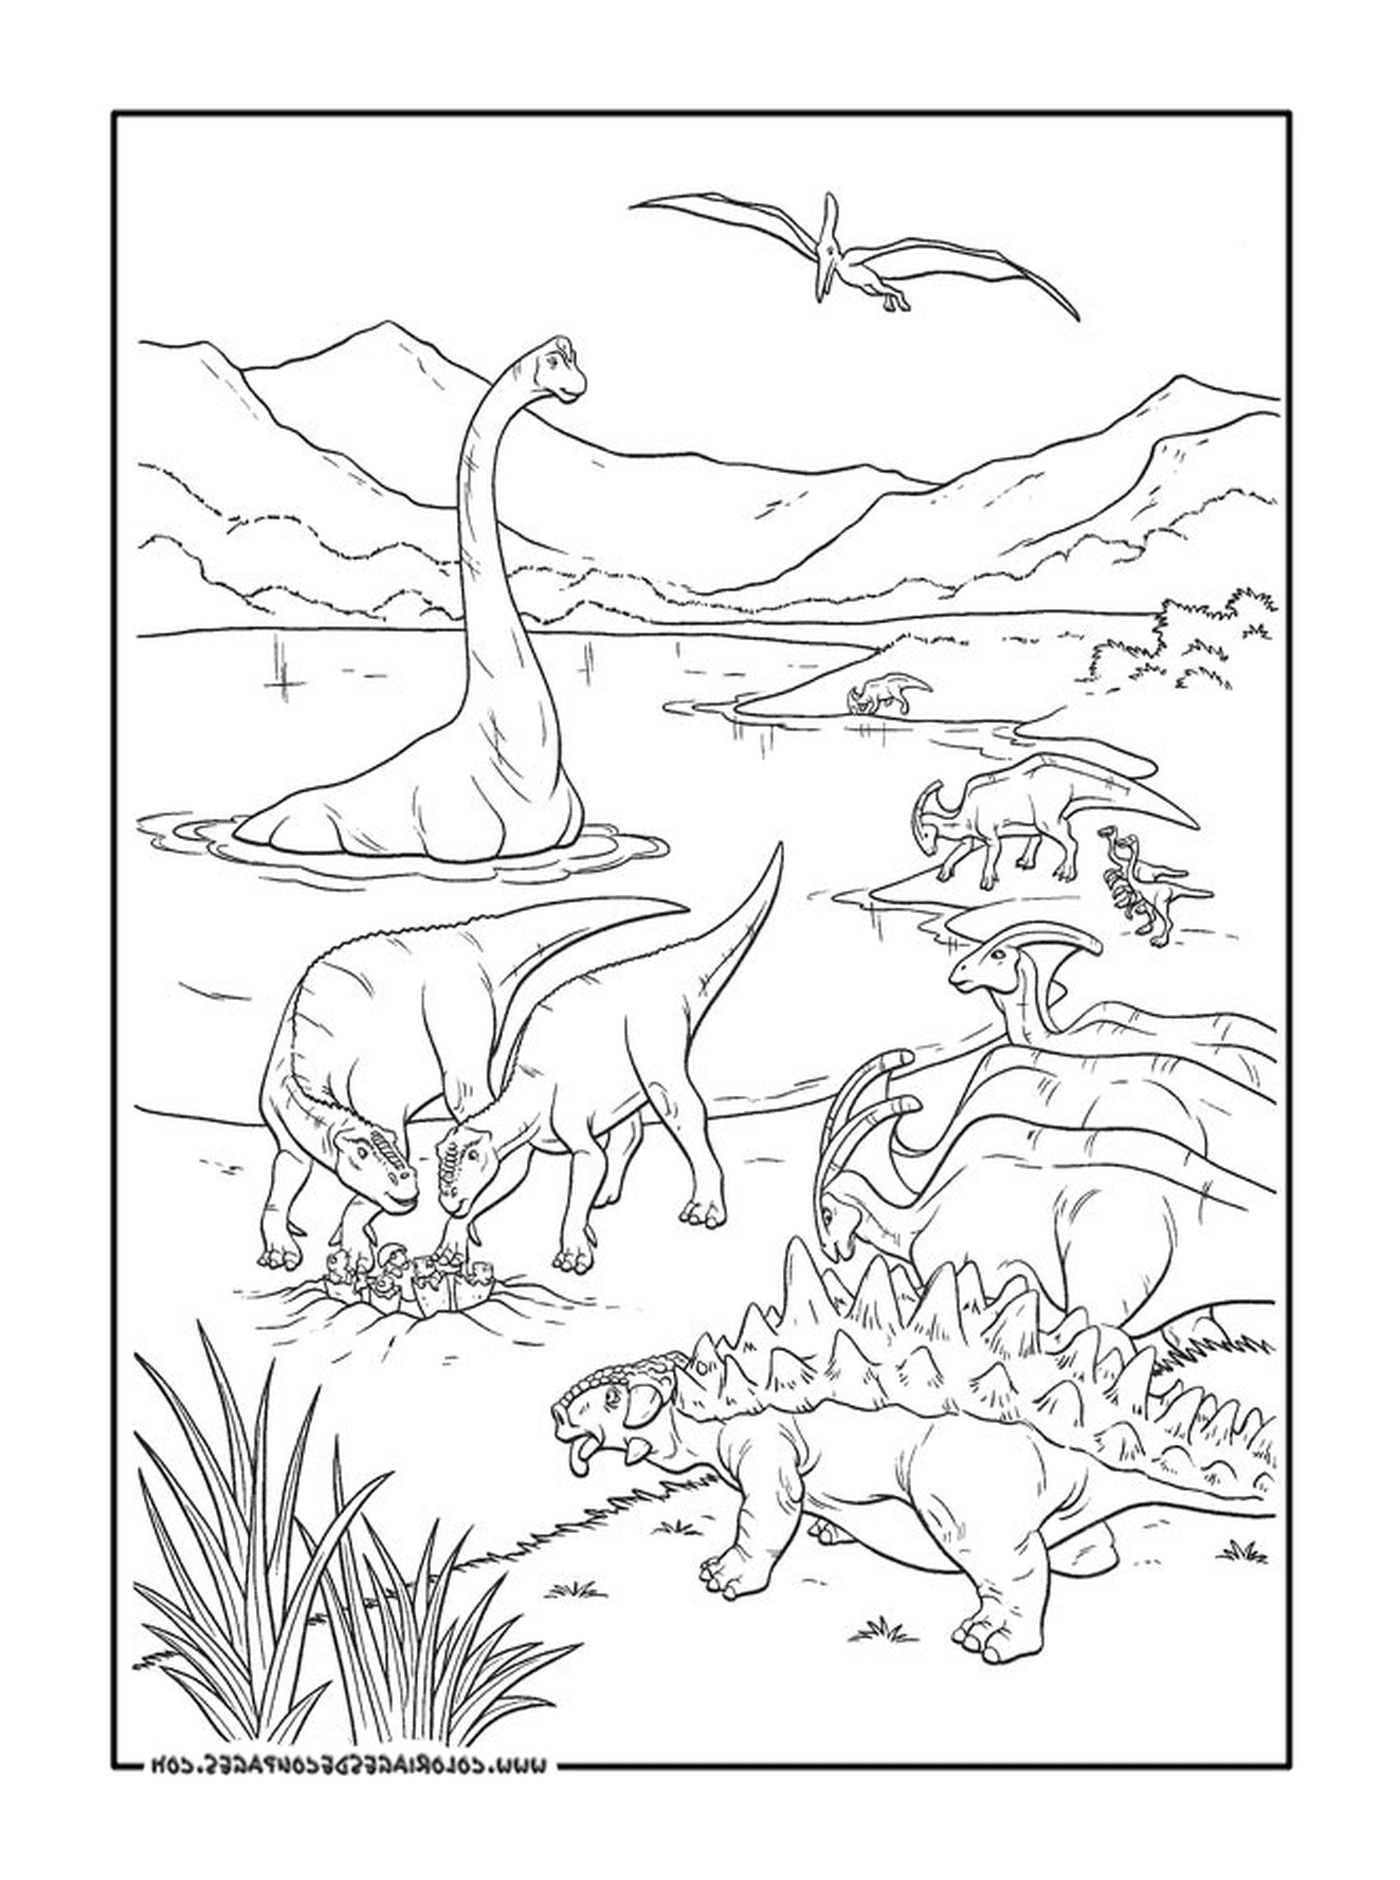  Un adulto de un grupo de dinosaurios 